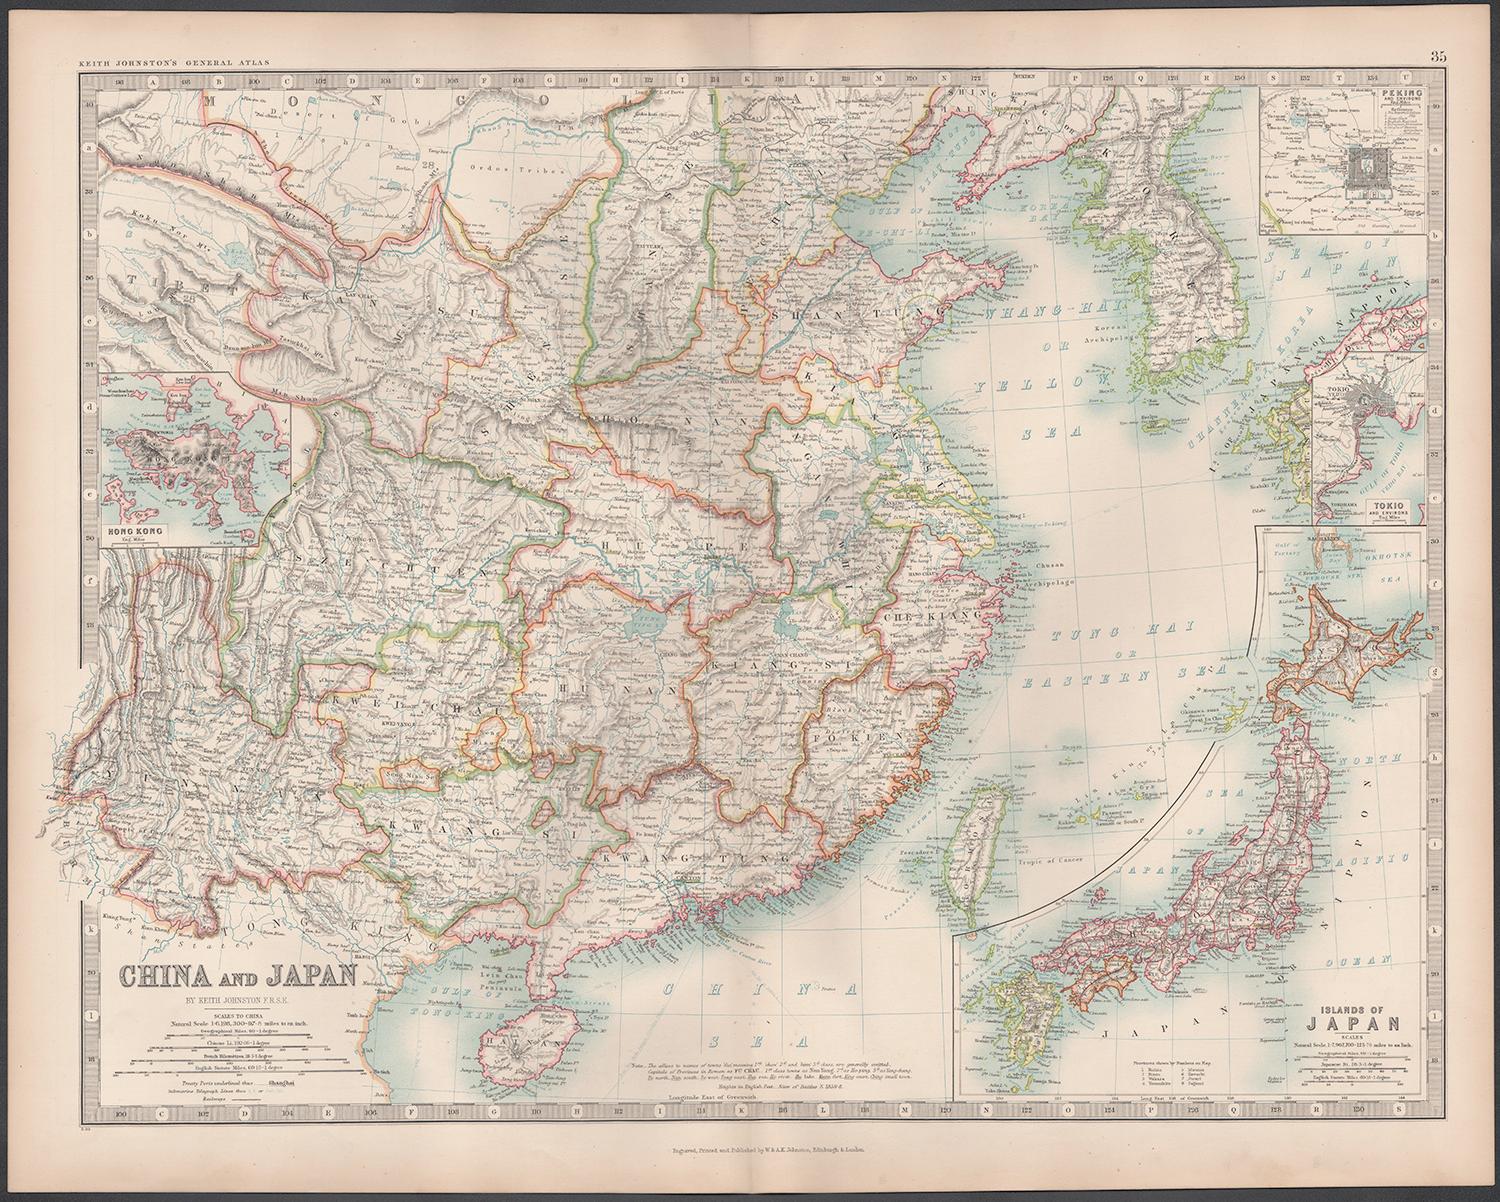 Chinesische China und Japan, englische antike Karte von Alexander Keith Johnston, 1901